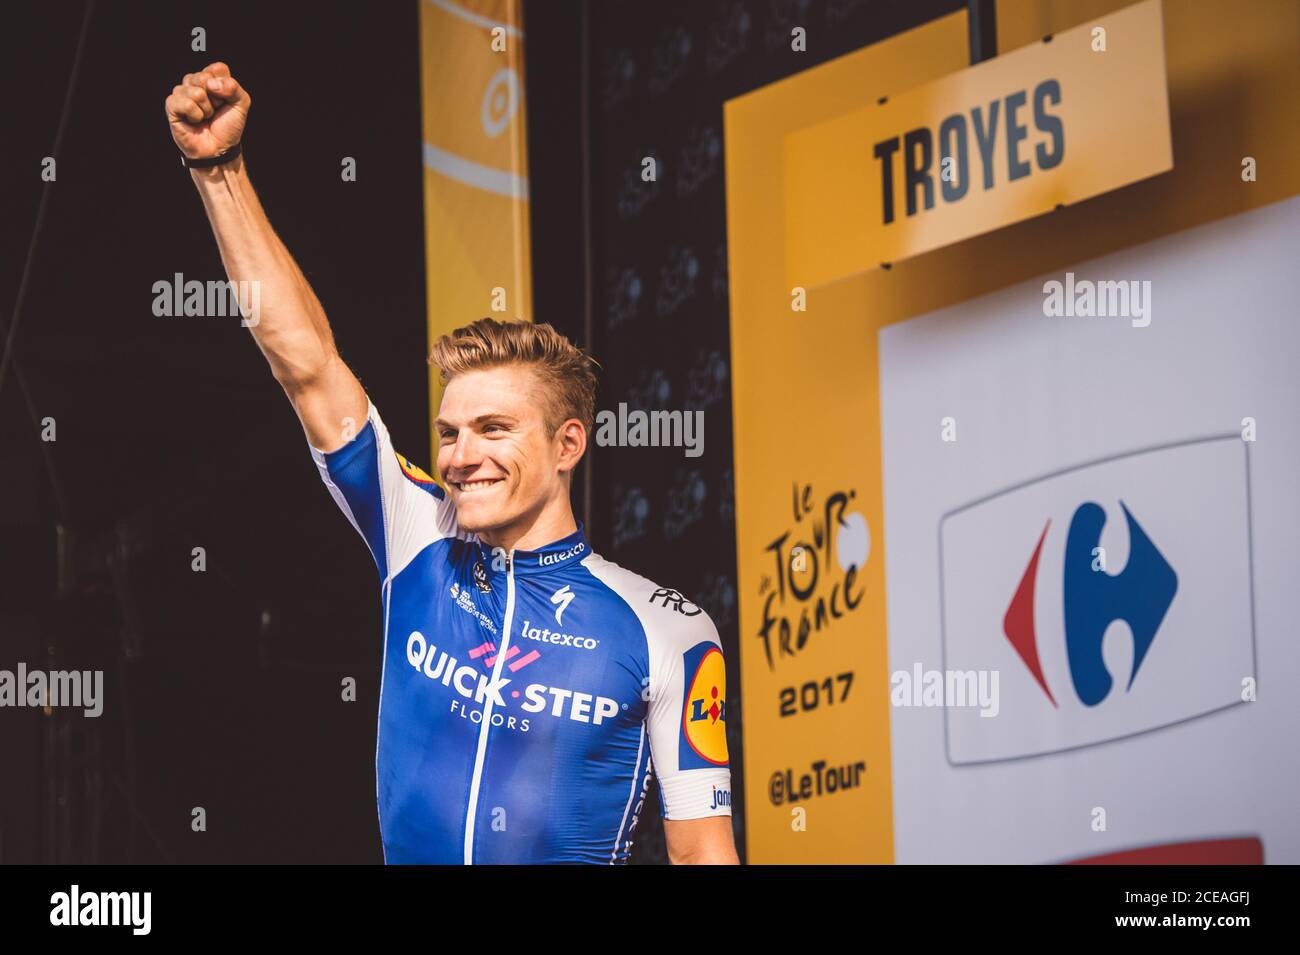 6 luglio 2017, Francia; Ciclismo, Tour de France 6° tappa: Marcel Kittel sul podio. Foto Stock